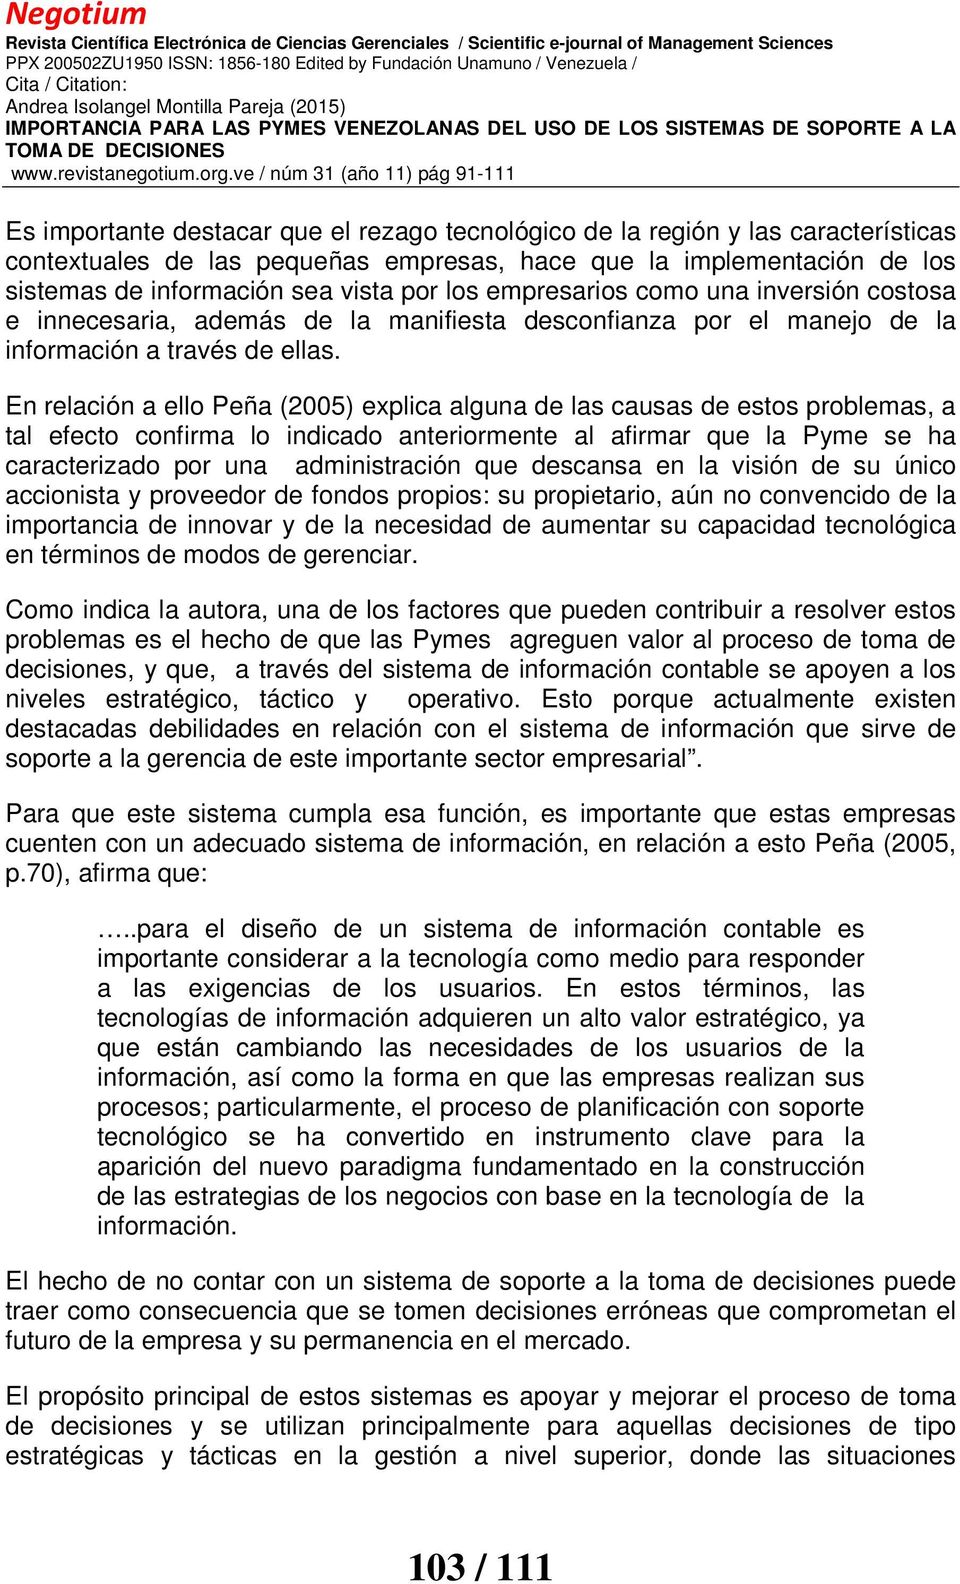 En relación a ello Peña (2005) explica alguna de las causas de estos problemas, a tal efecto confirma lo indicado anteriormente al afirmar que la Pyme se ha caracterizado por una administración que